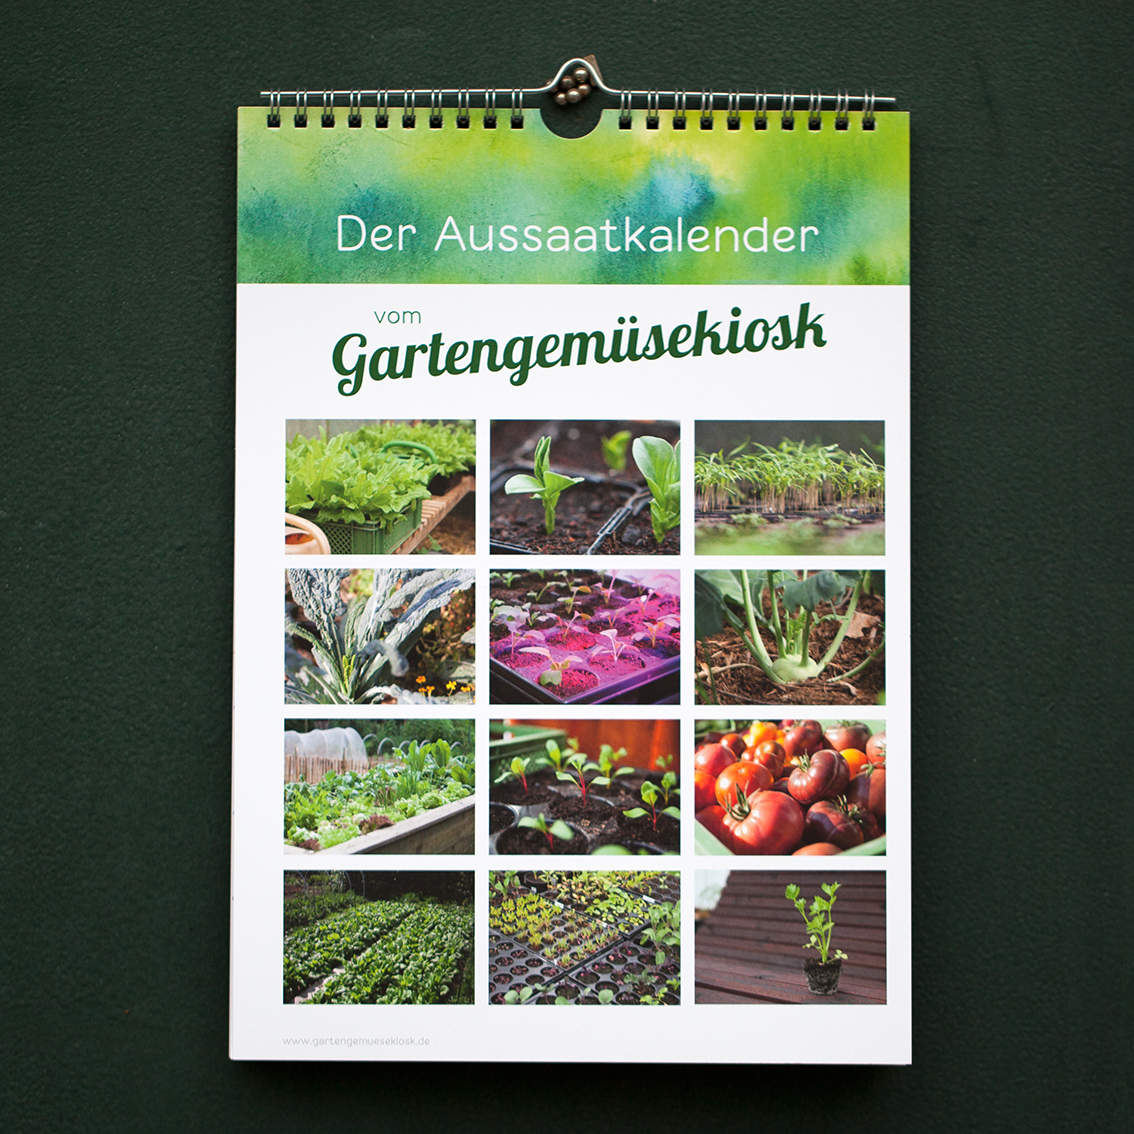 Der Aussaatkalender Was Der Gartner Aussat Selbstversorgung Im Gartengemusekiosk